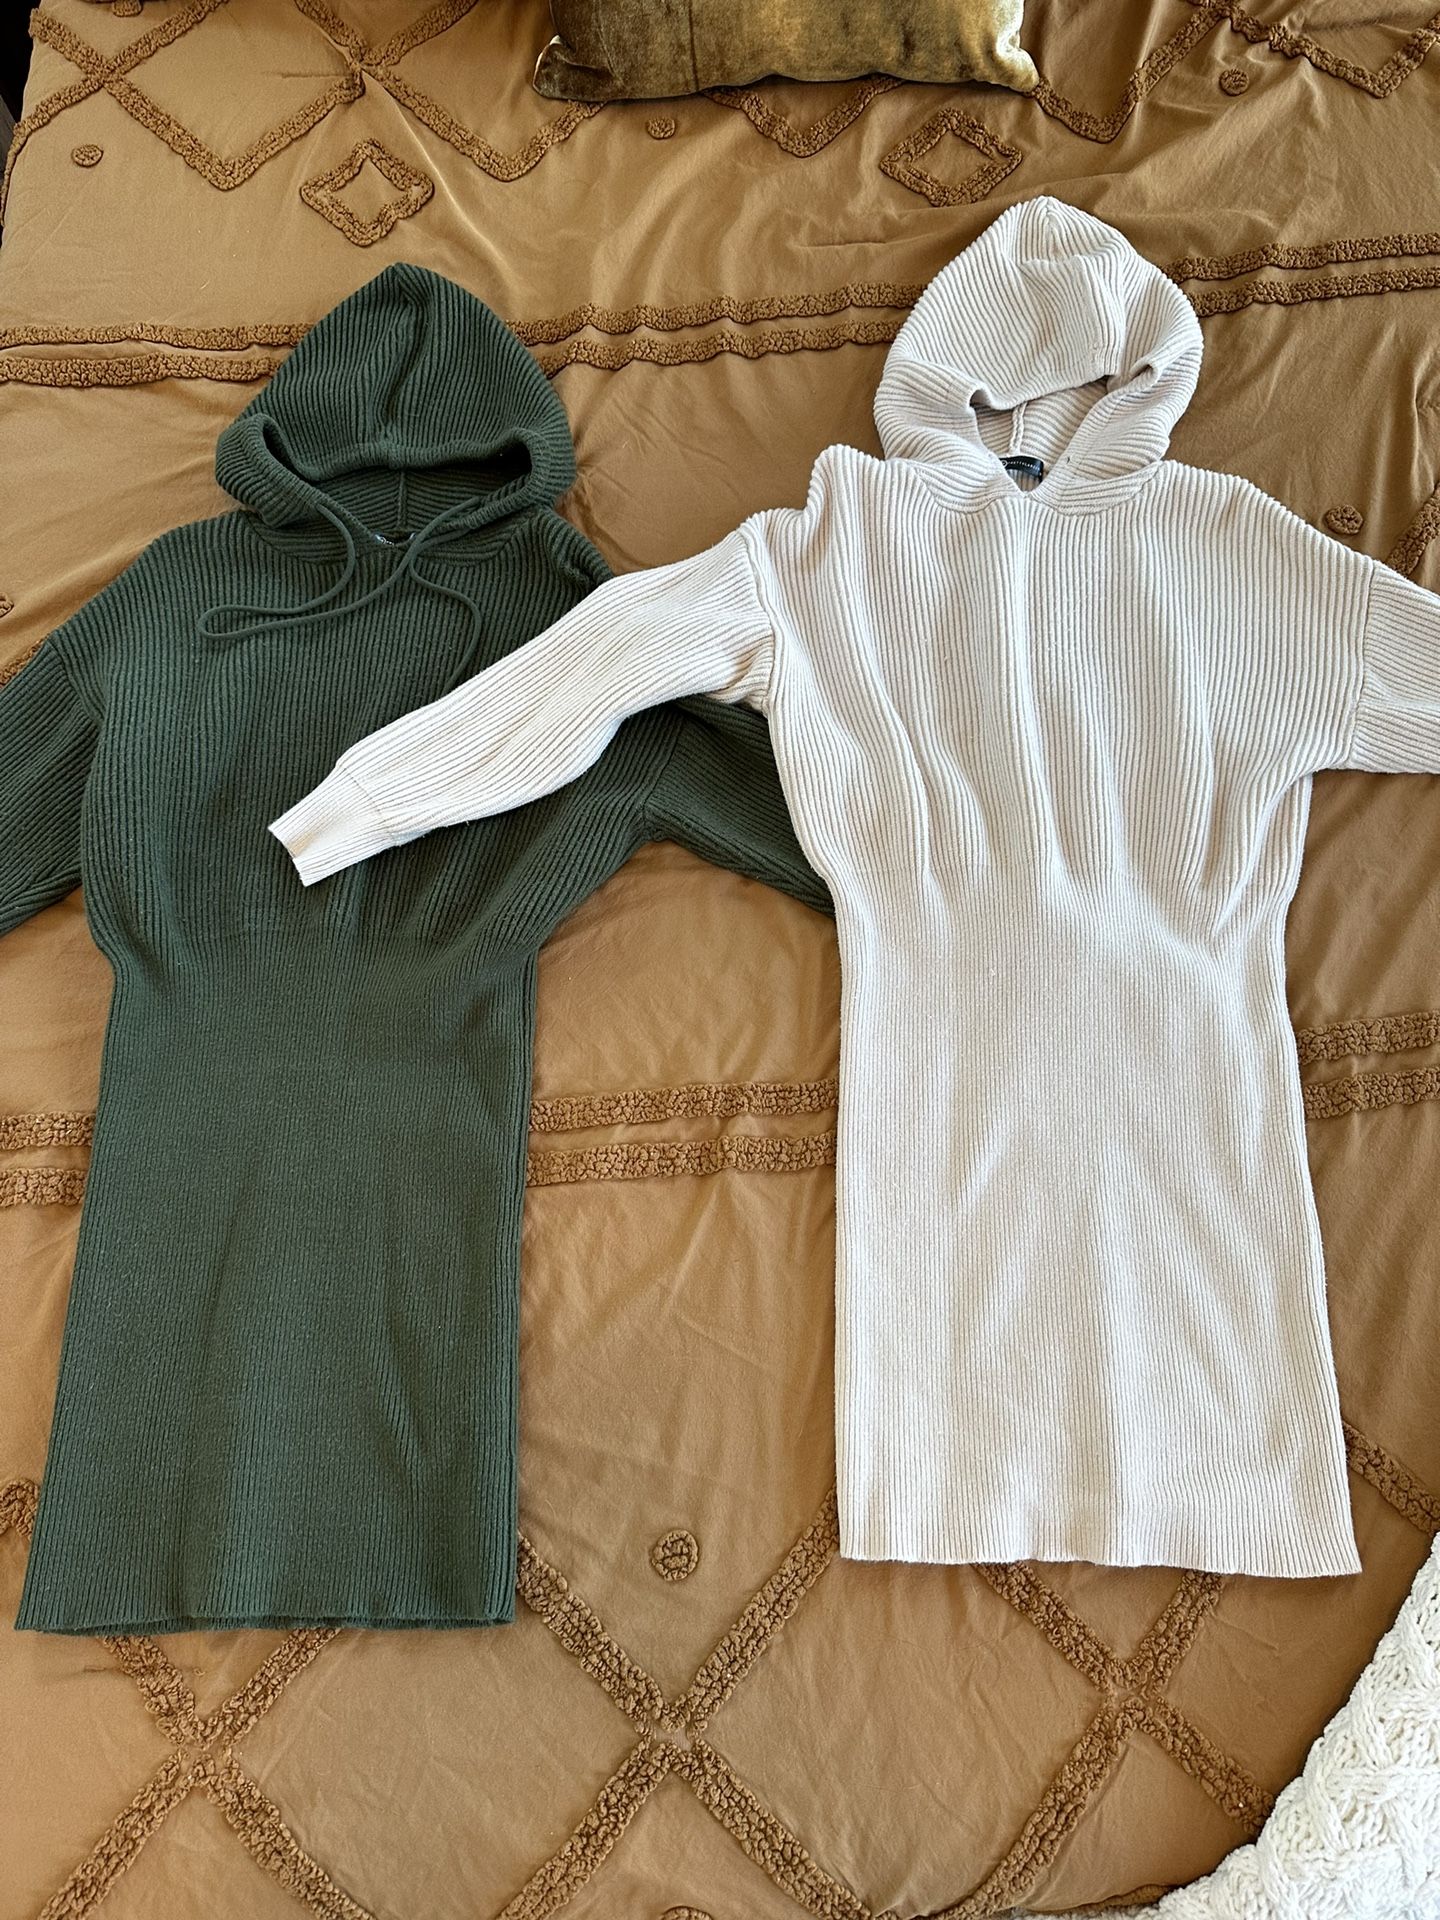 2 - Medium Sweater Dresses